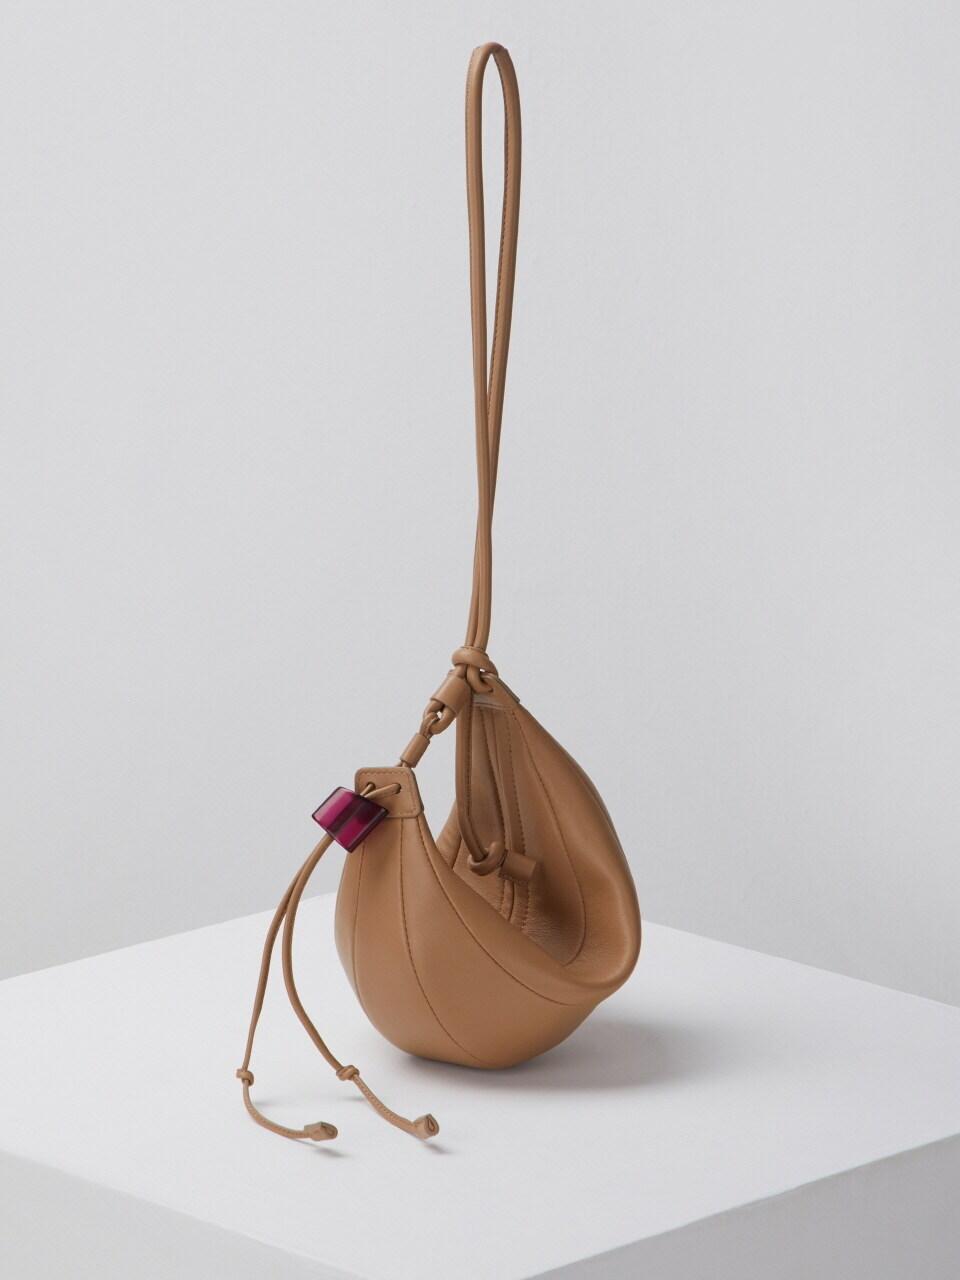 ARCHIVEPKE Women's Small Fling Bag